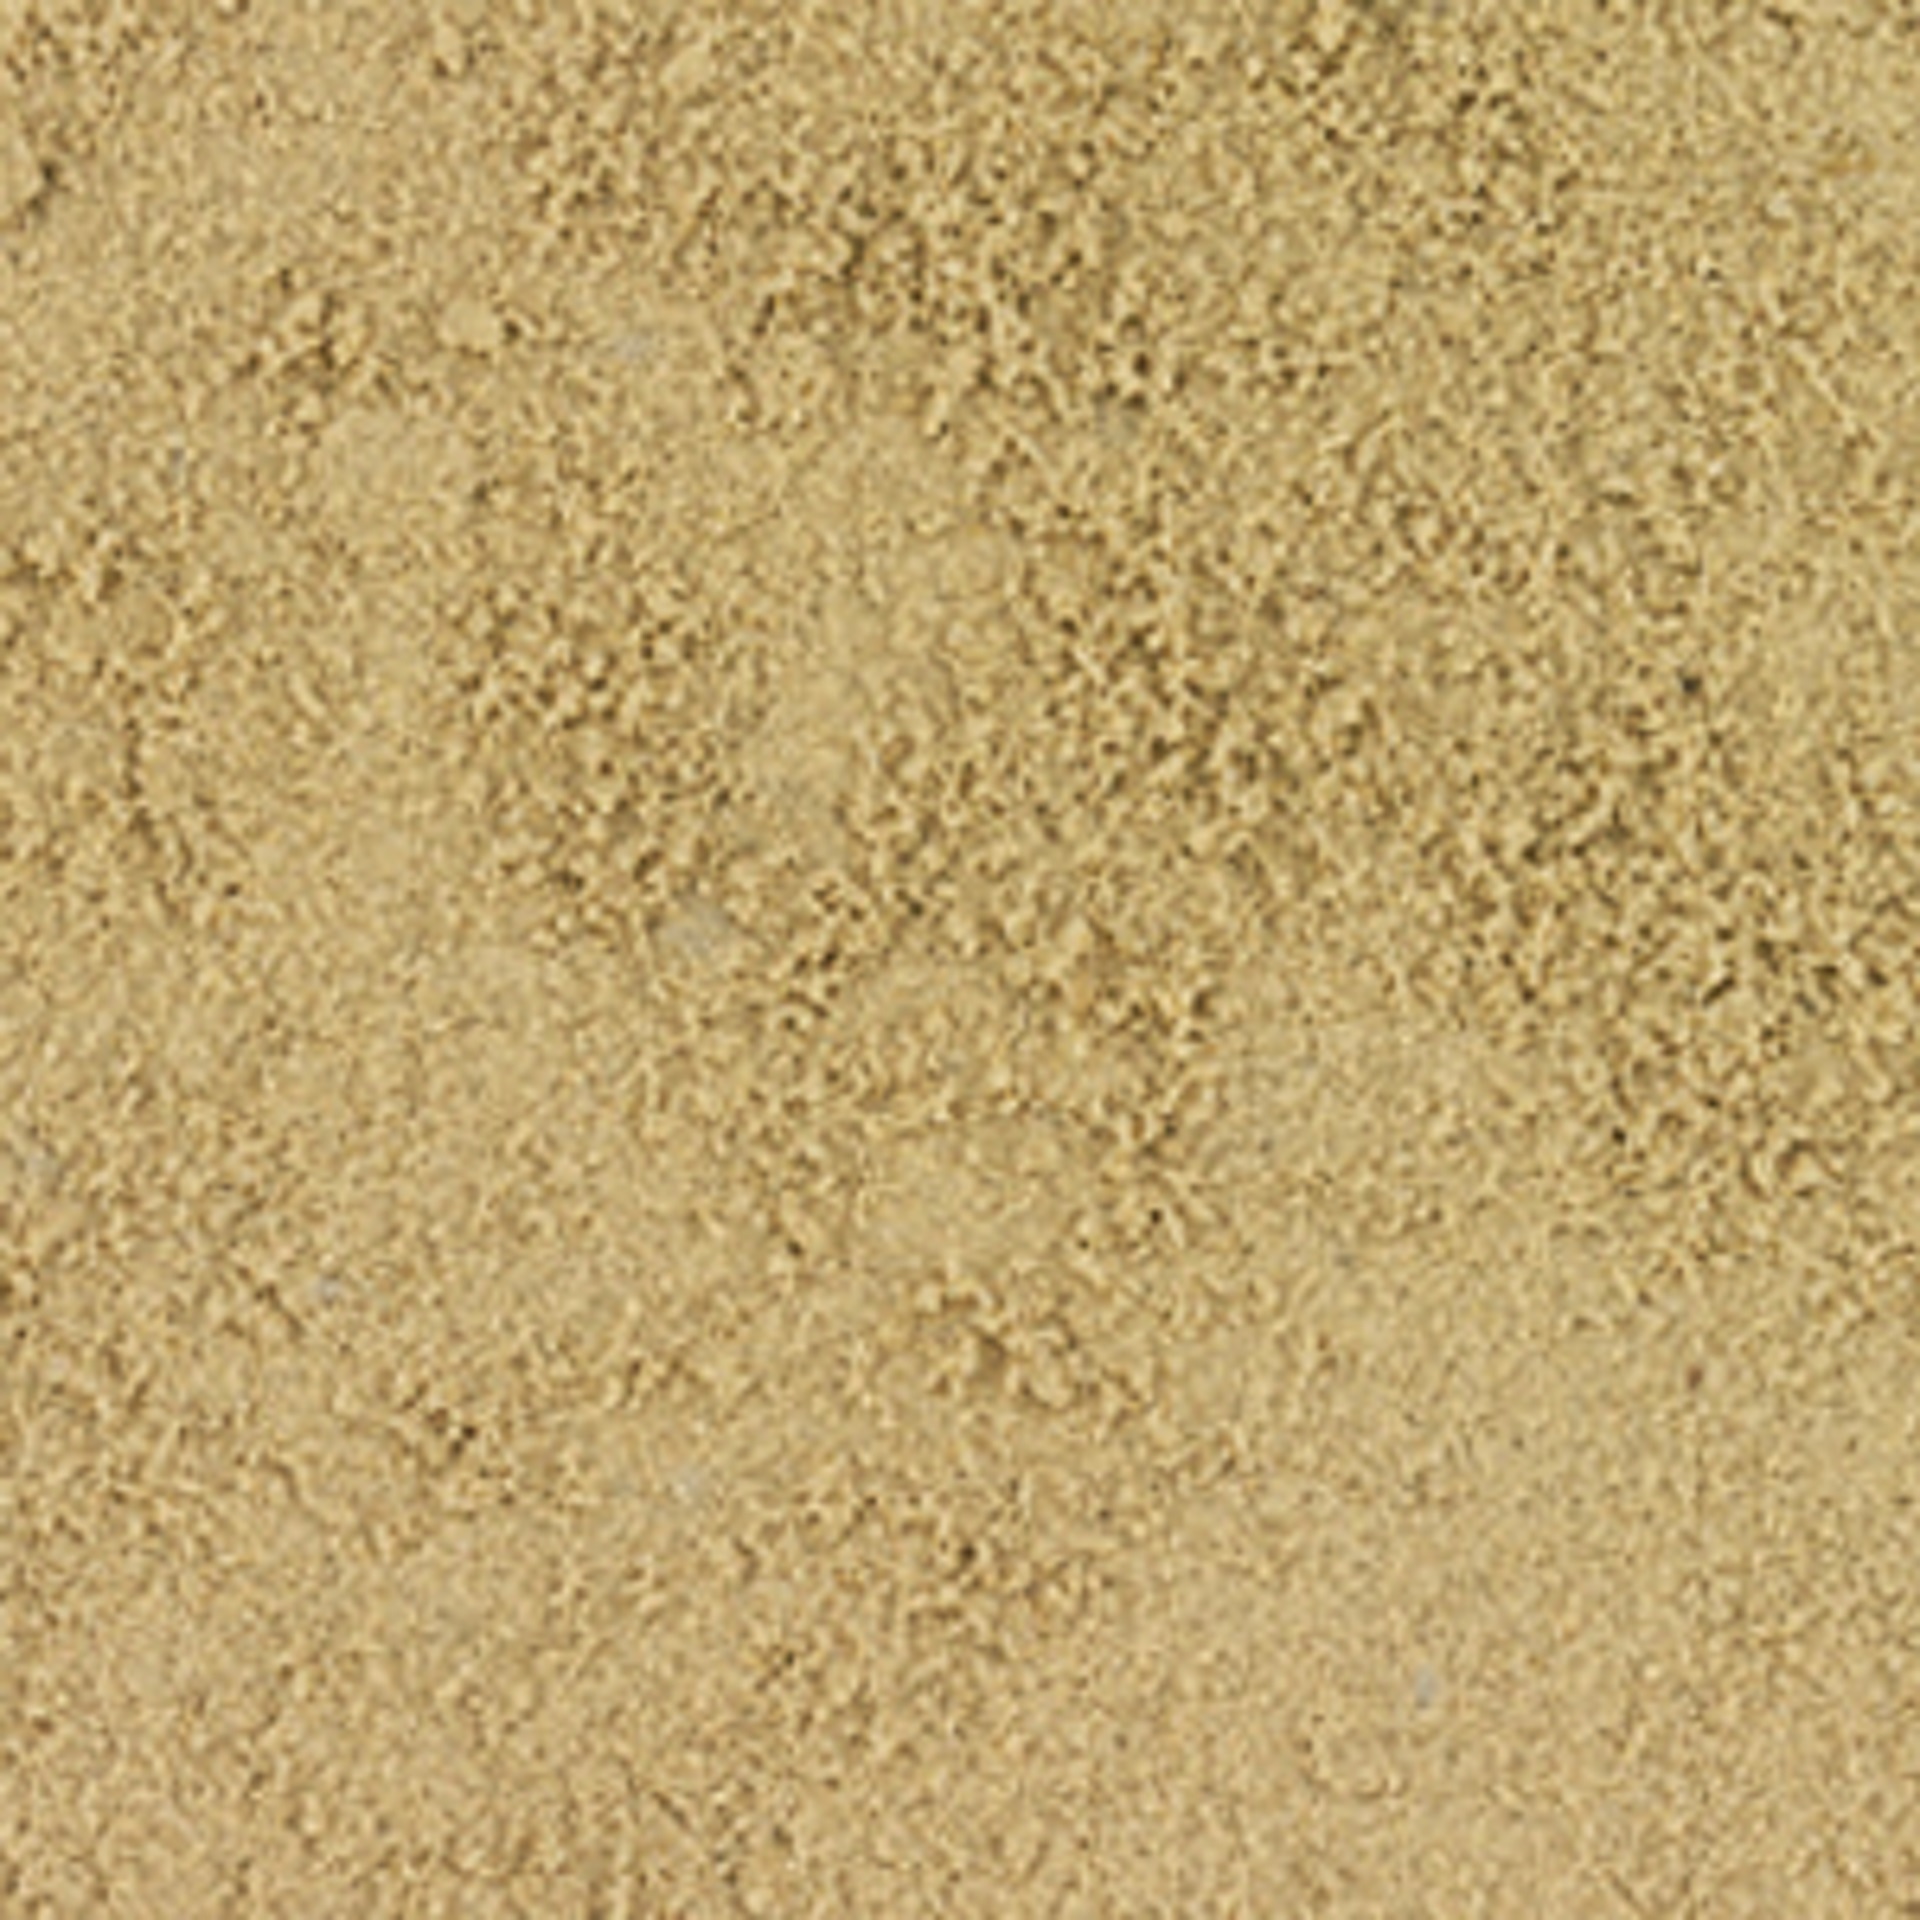 Min2C 25 kg Spielsand Quarzsand